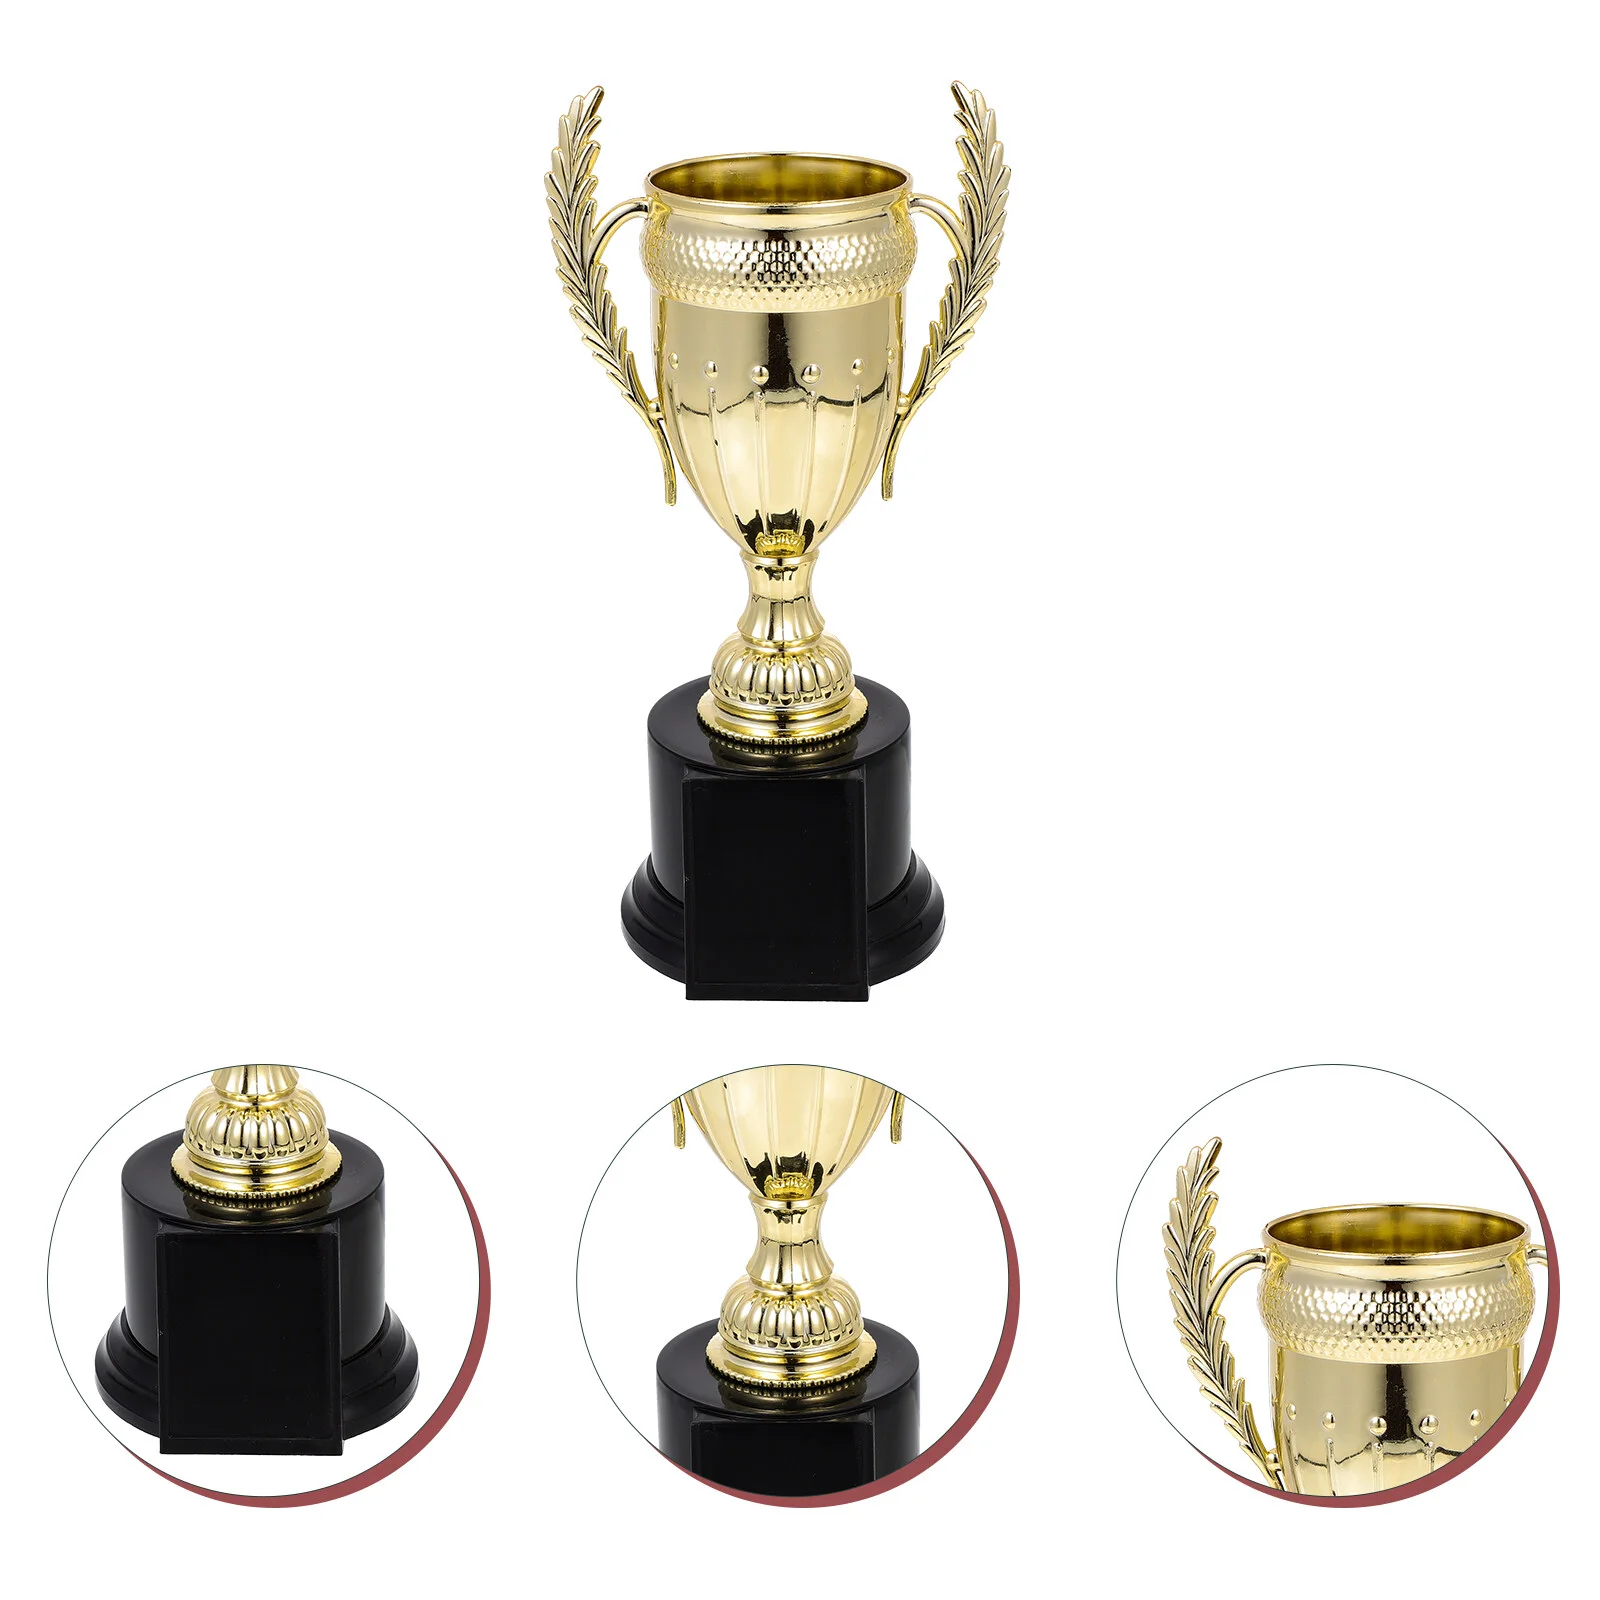 

Золотистый трофей, награды на золотистый Кубок, награды, награды на Кубок, приз, премия для школы, офиса, спорта